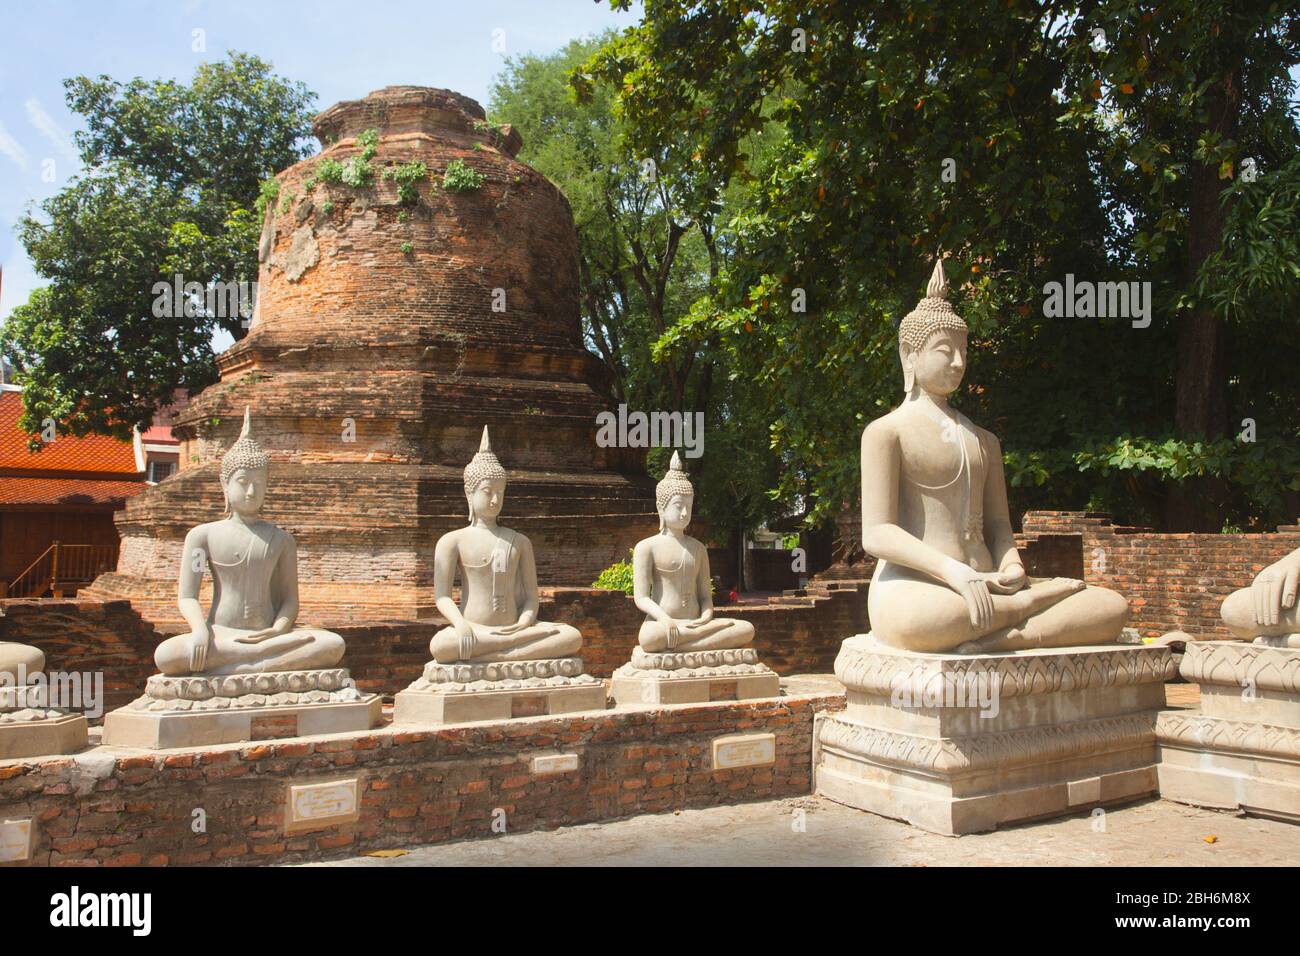 Buddha-Statuen in Ayuttaya die antike Stadt und ehemalige Hauptstadt von Siam, heute Thailand, wurde 1767 in einer Schlacht mit Burma zerstört Stockfoto